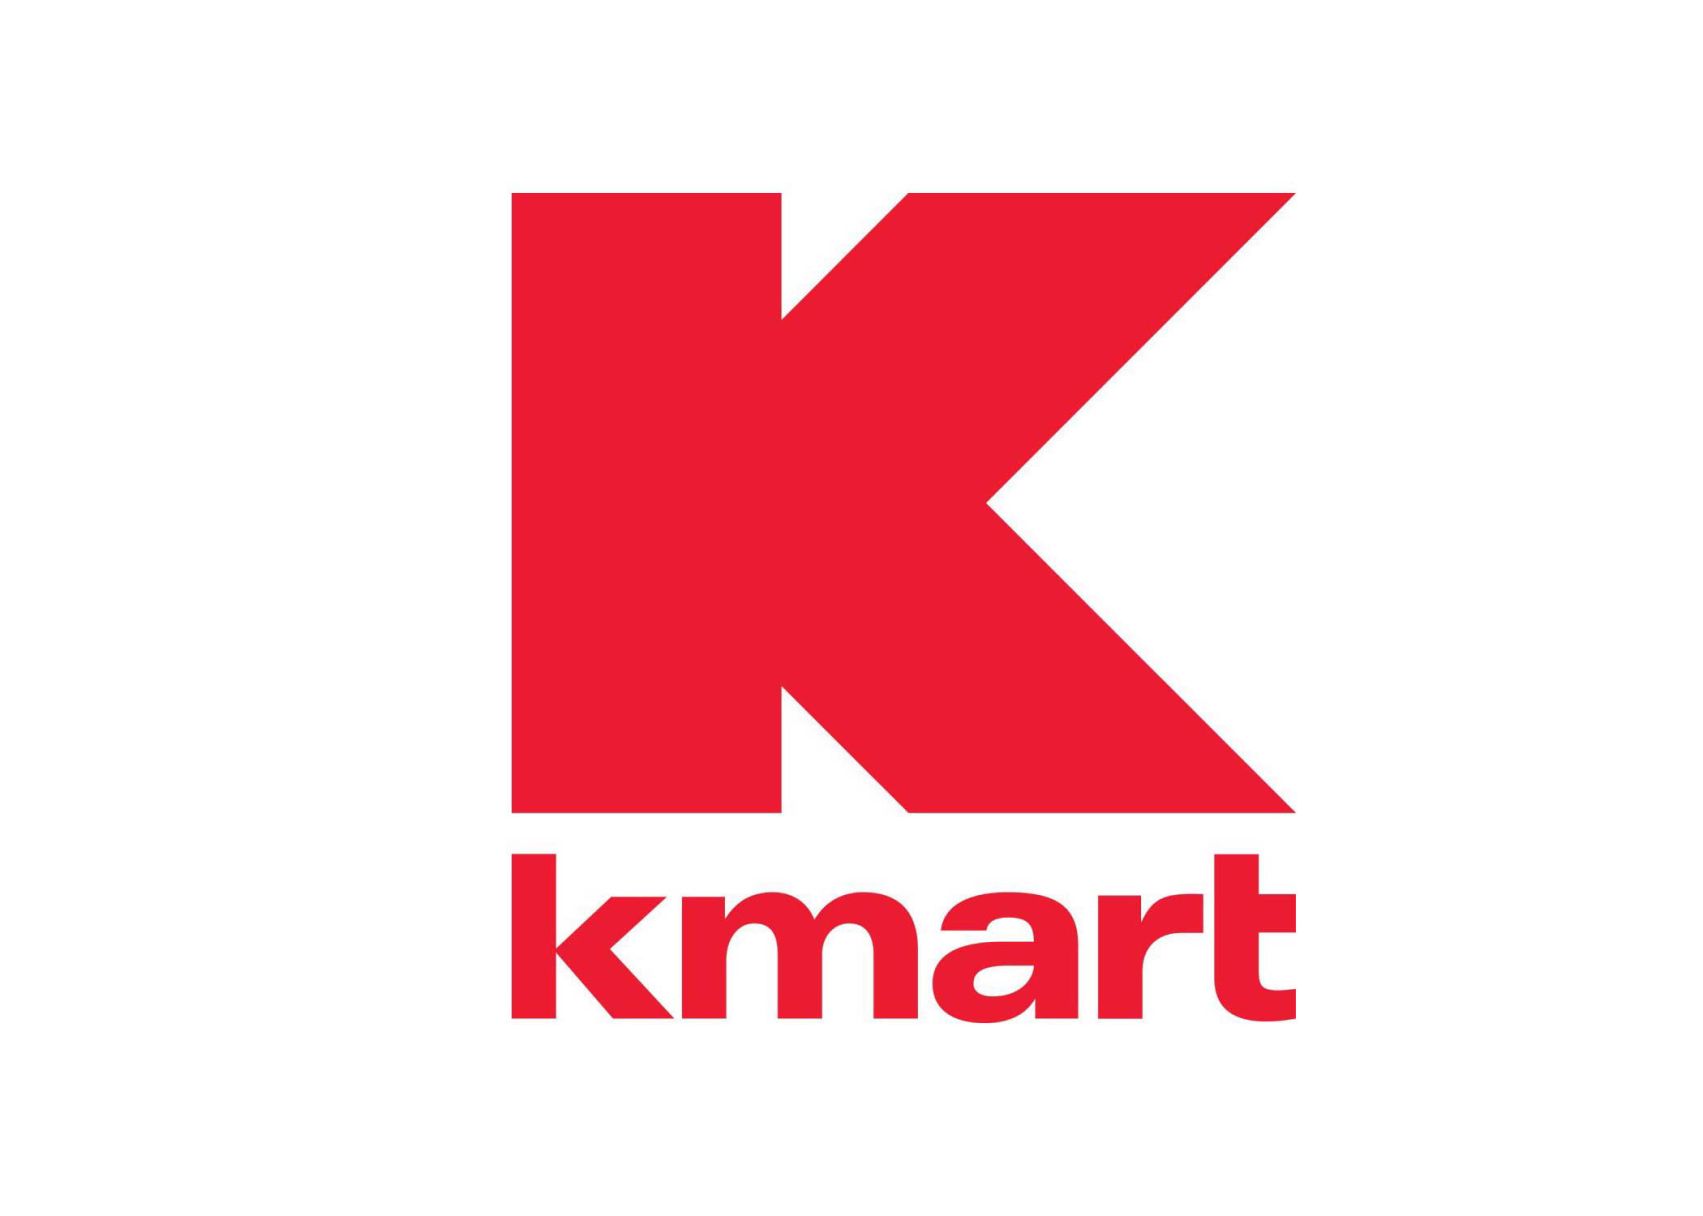 kmart letter blocks